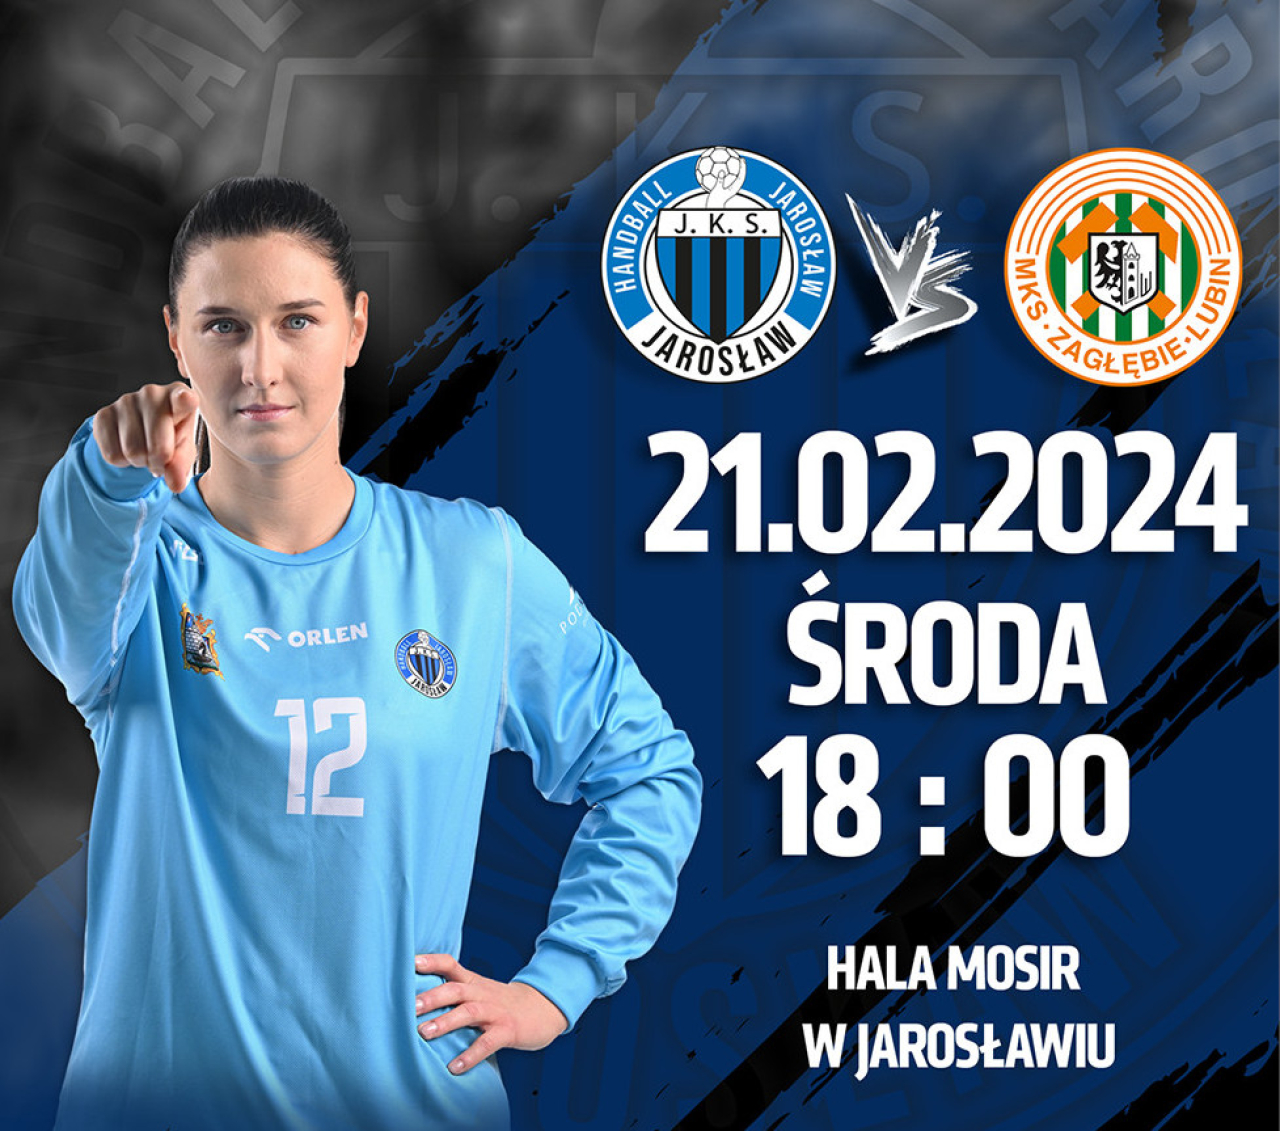 Handball JKS Jarosław vs. MKS Zagłębie Lubin